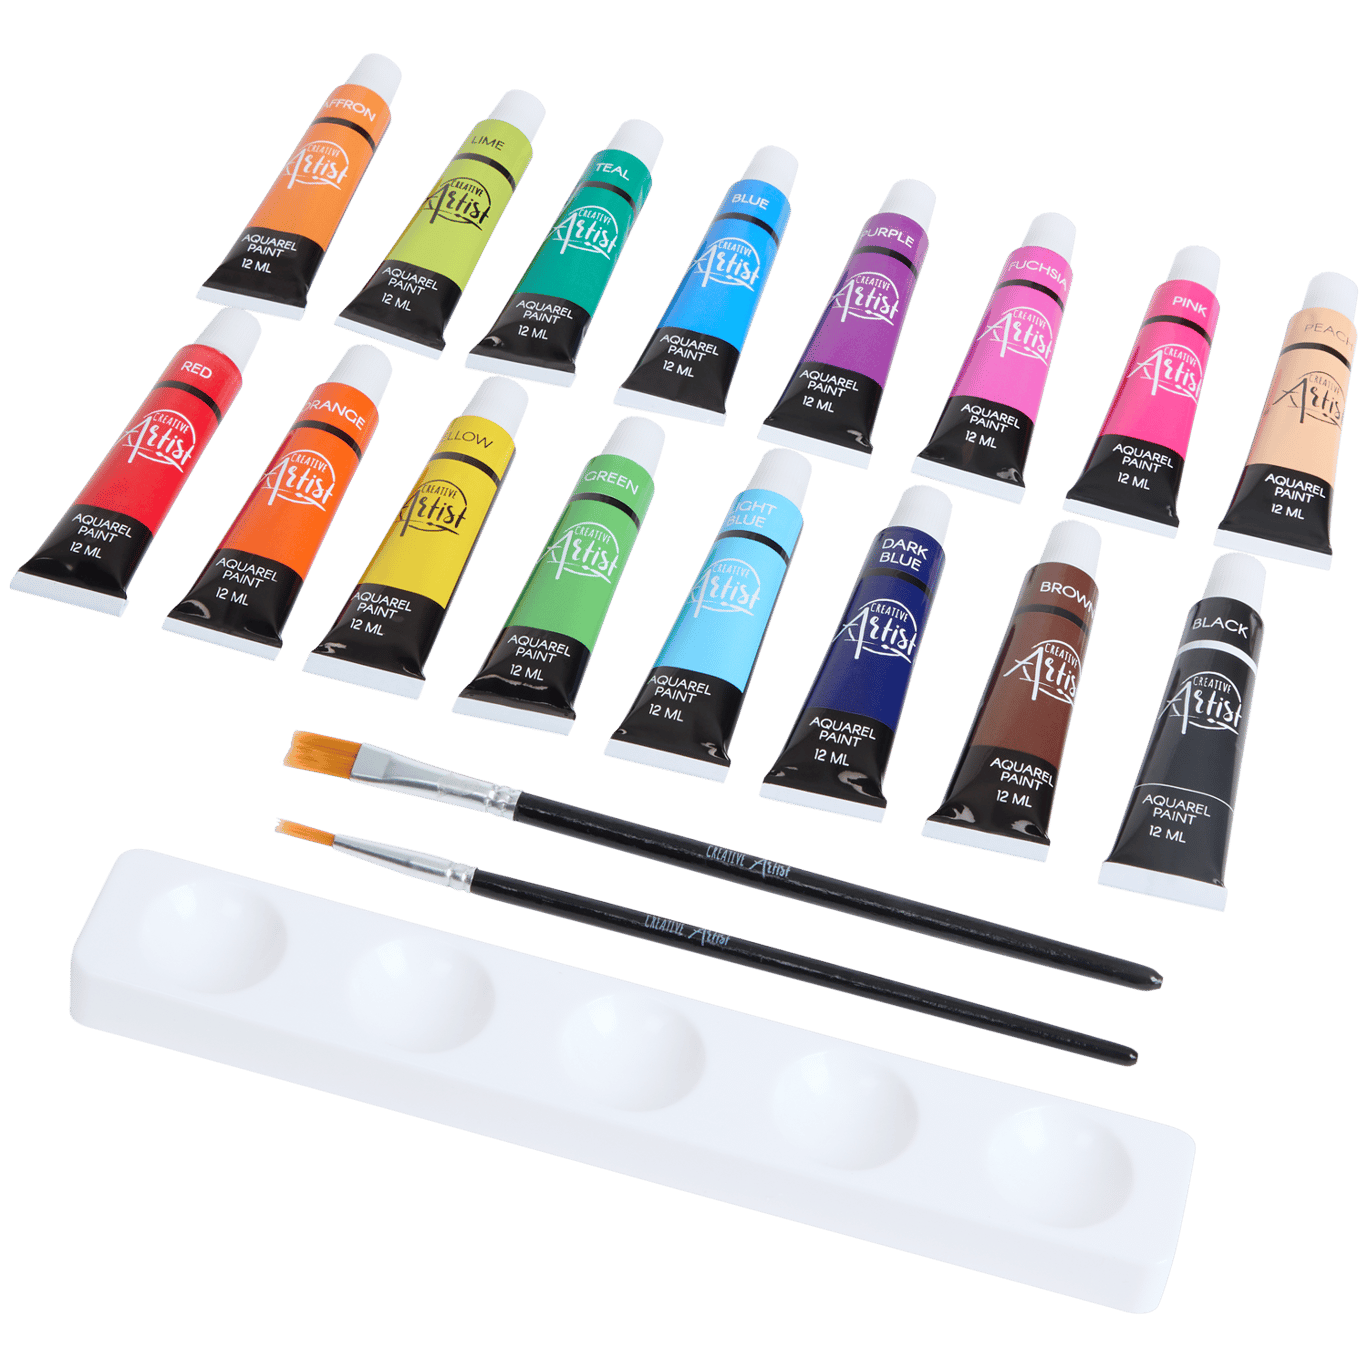 Creative Artist Aquarellfarben-Set